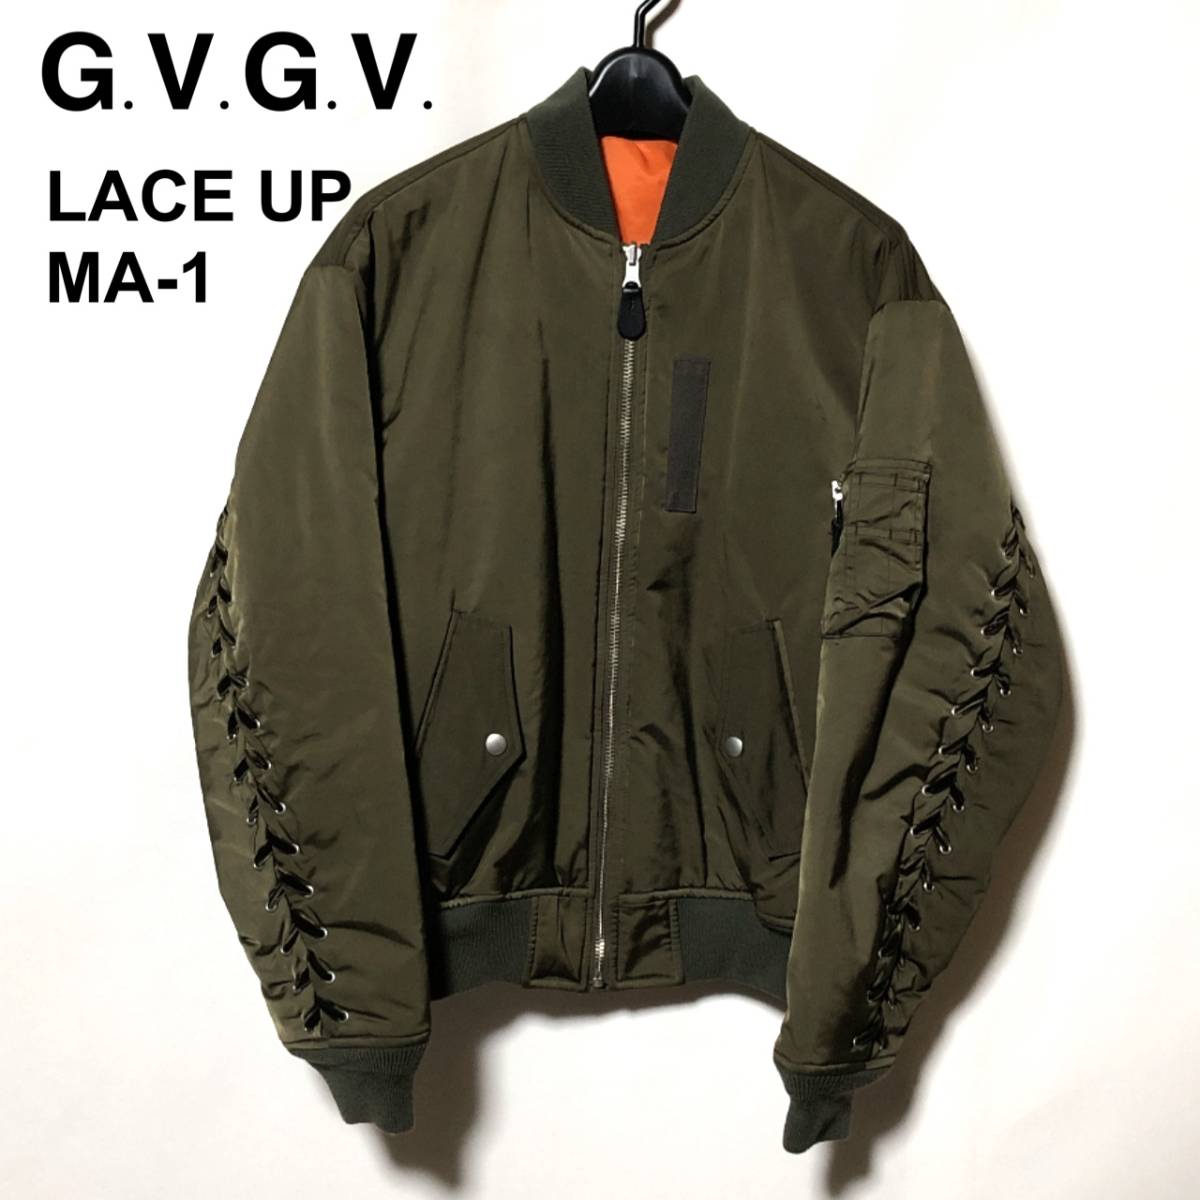 G.V.G.V レースアップMA1ジャケット-